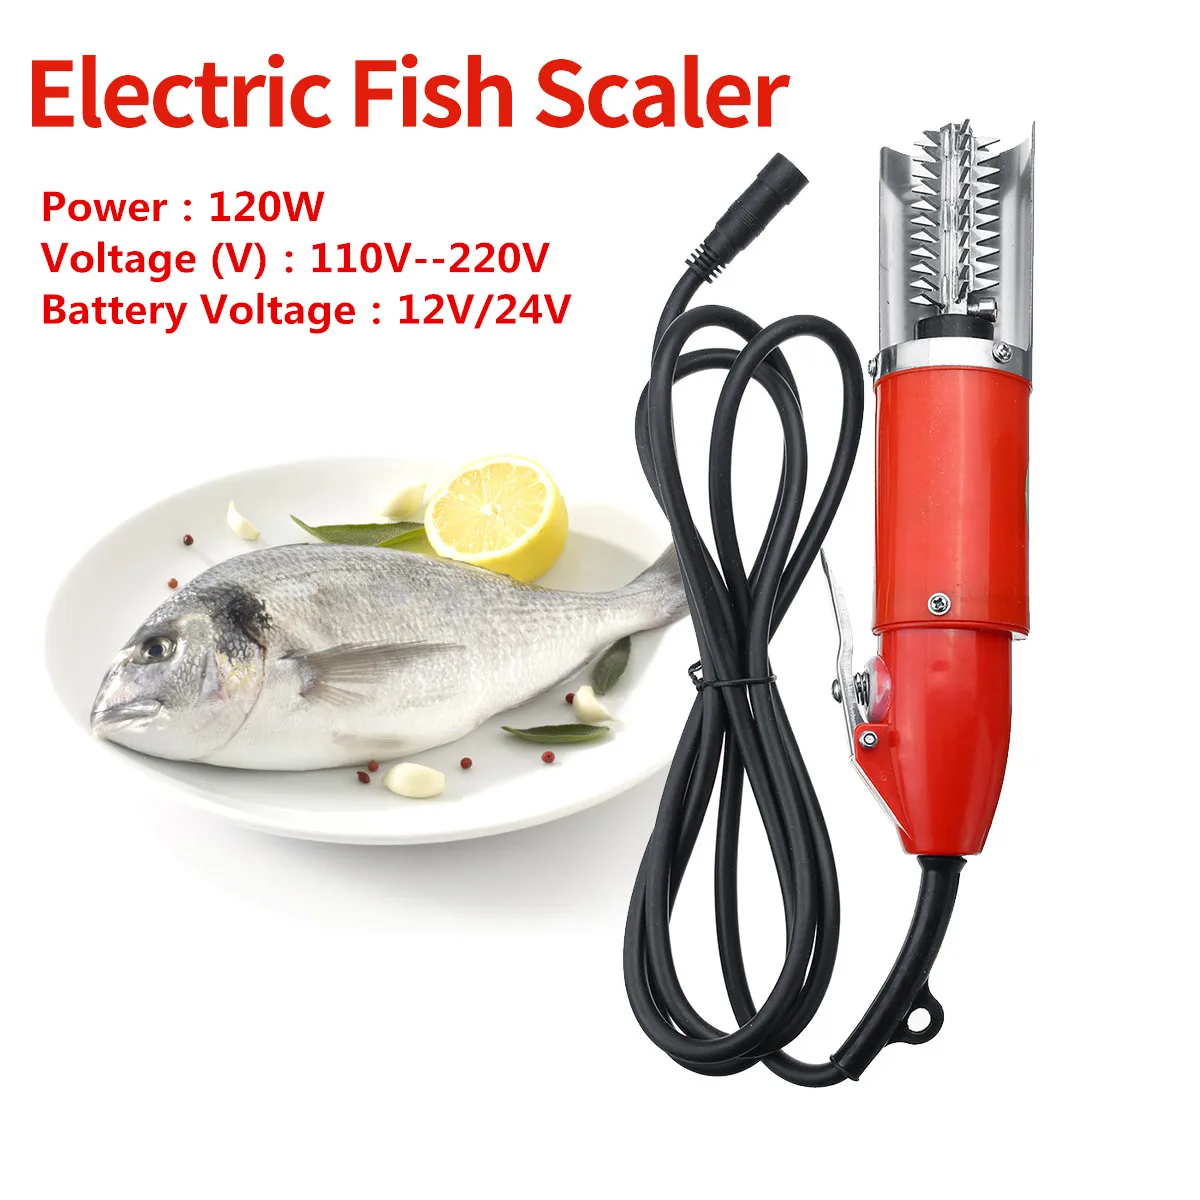 

Полезный Водонепроницаемый Электрический скребок для рыбной чешуи, 120 Вт, рыболовные чешуи, чистящее средство для легкой очистки рыбы, сред...